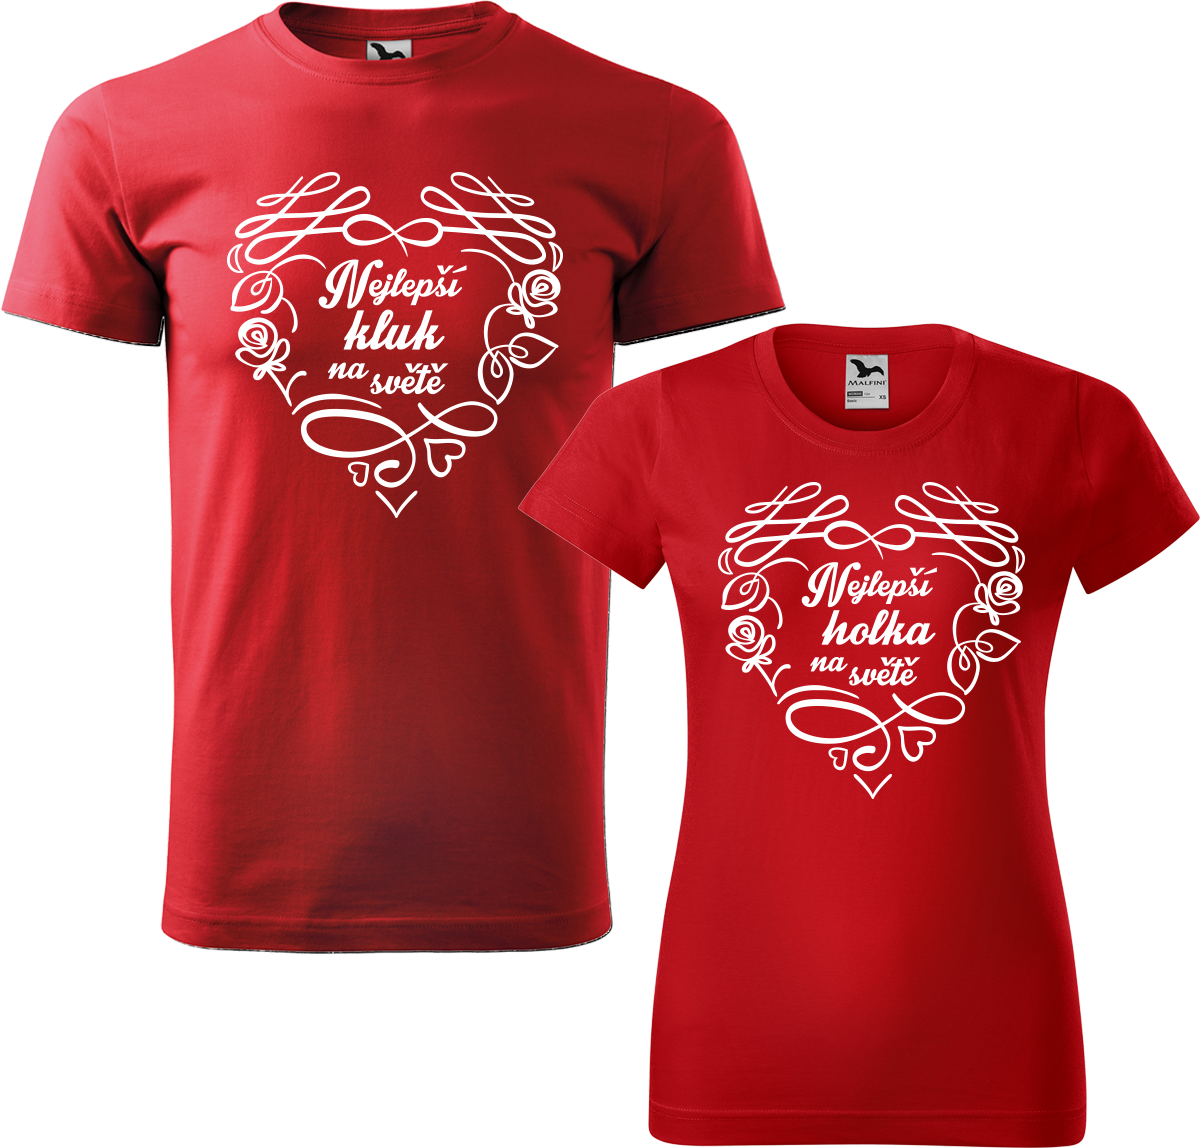 Trička pro páry - Nejlepší kluk / holka na světě Barva: Červená (07), Velikost dámské tričko: L, Velikost pánské tričko: L